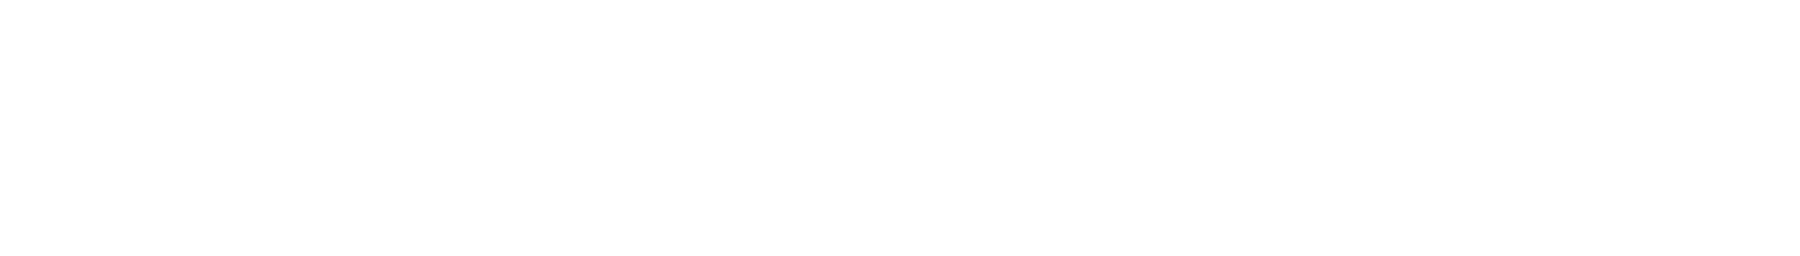 2024.7.20【SAT】【九州・沖縄エリア大会】イオンモール熊本▶